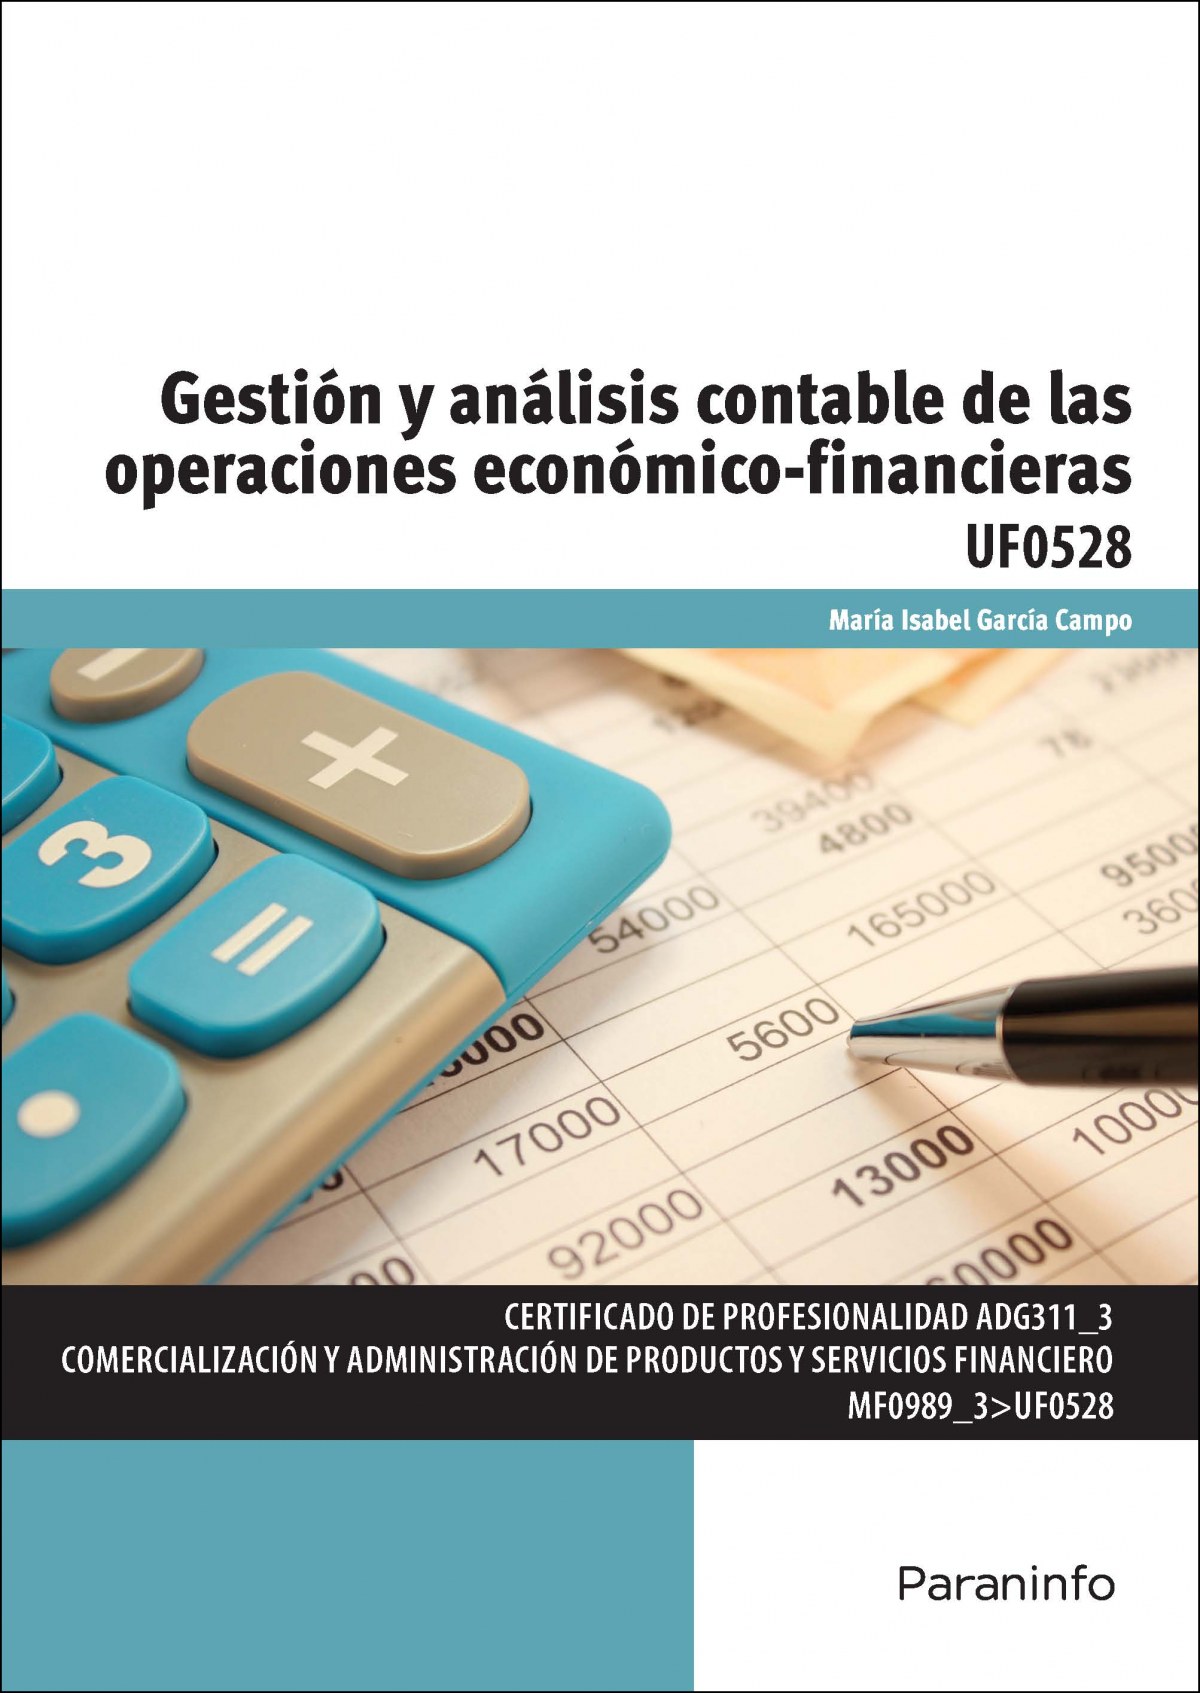 Gestión y análisis contable operaciones económico-financiero - García Campo, María Isabel